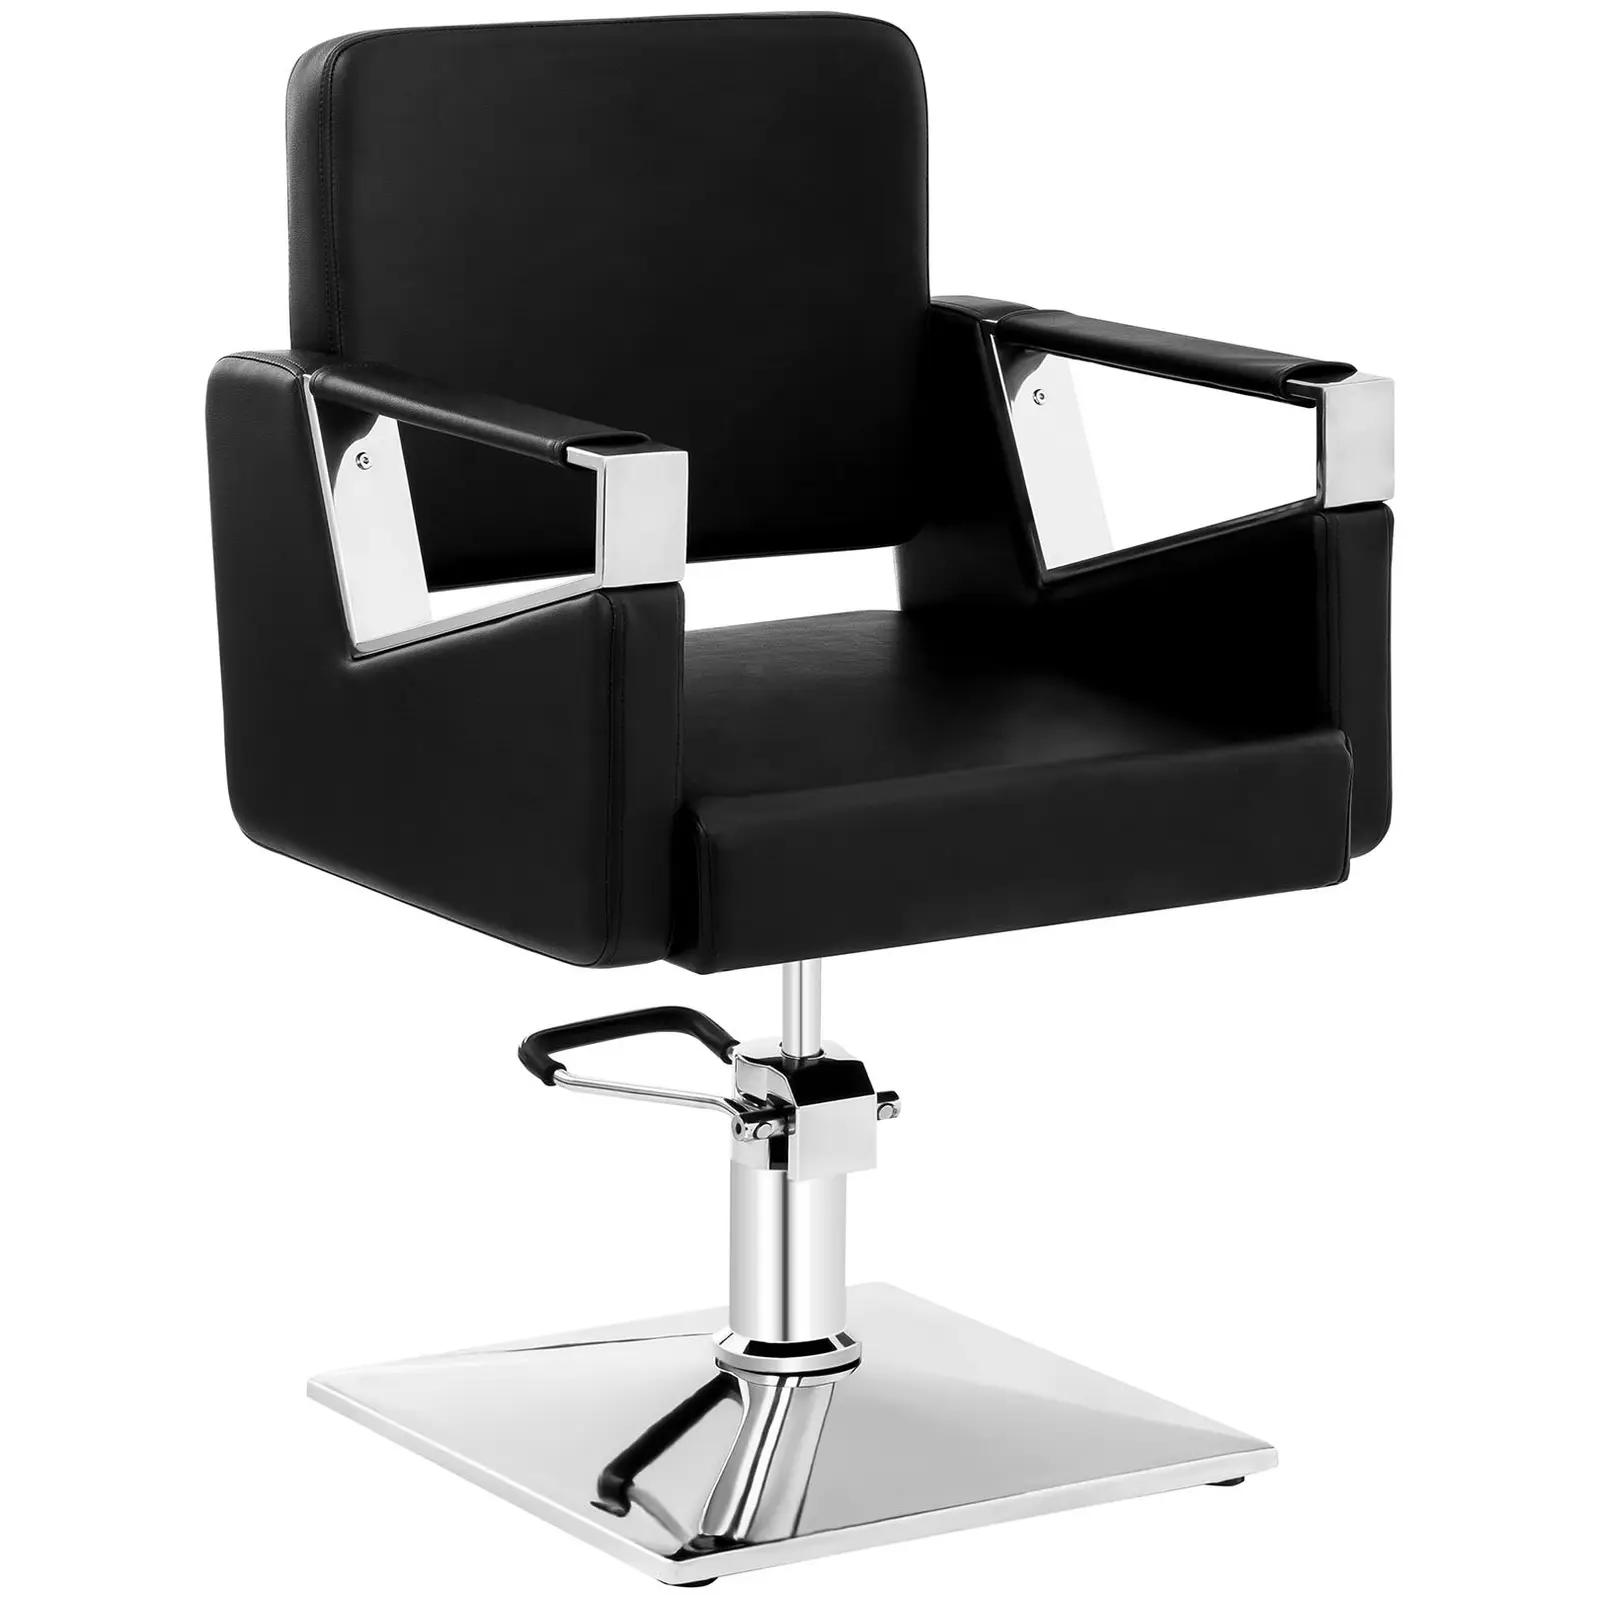 Fodrász szék - 445–550 mm - 200 kg - Fekete | physa